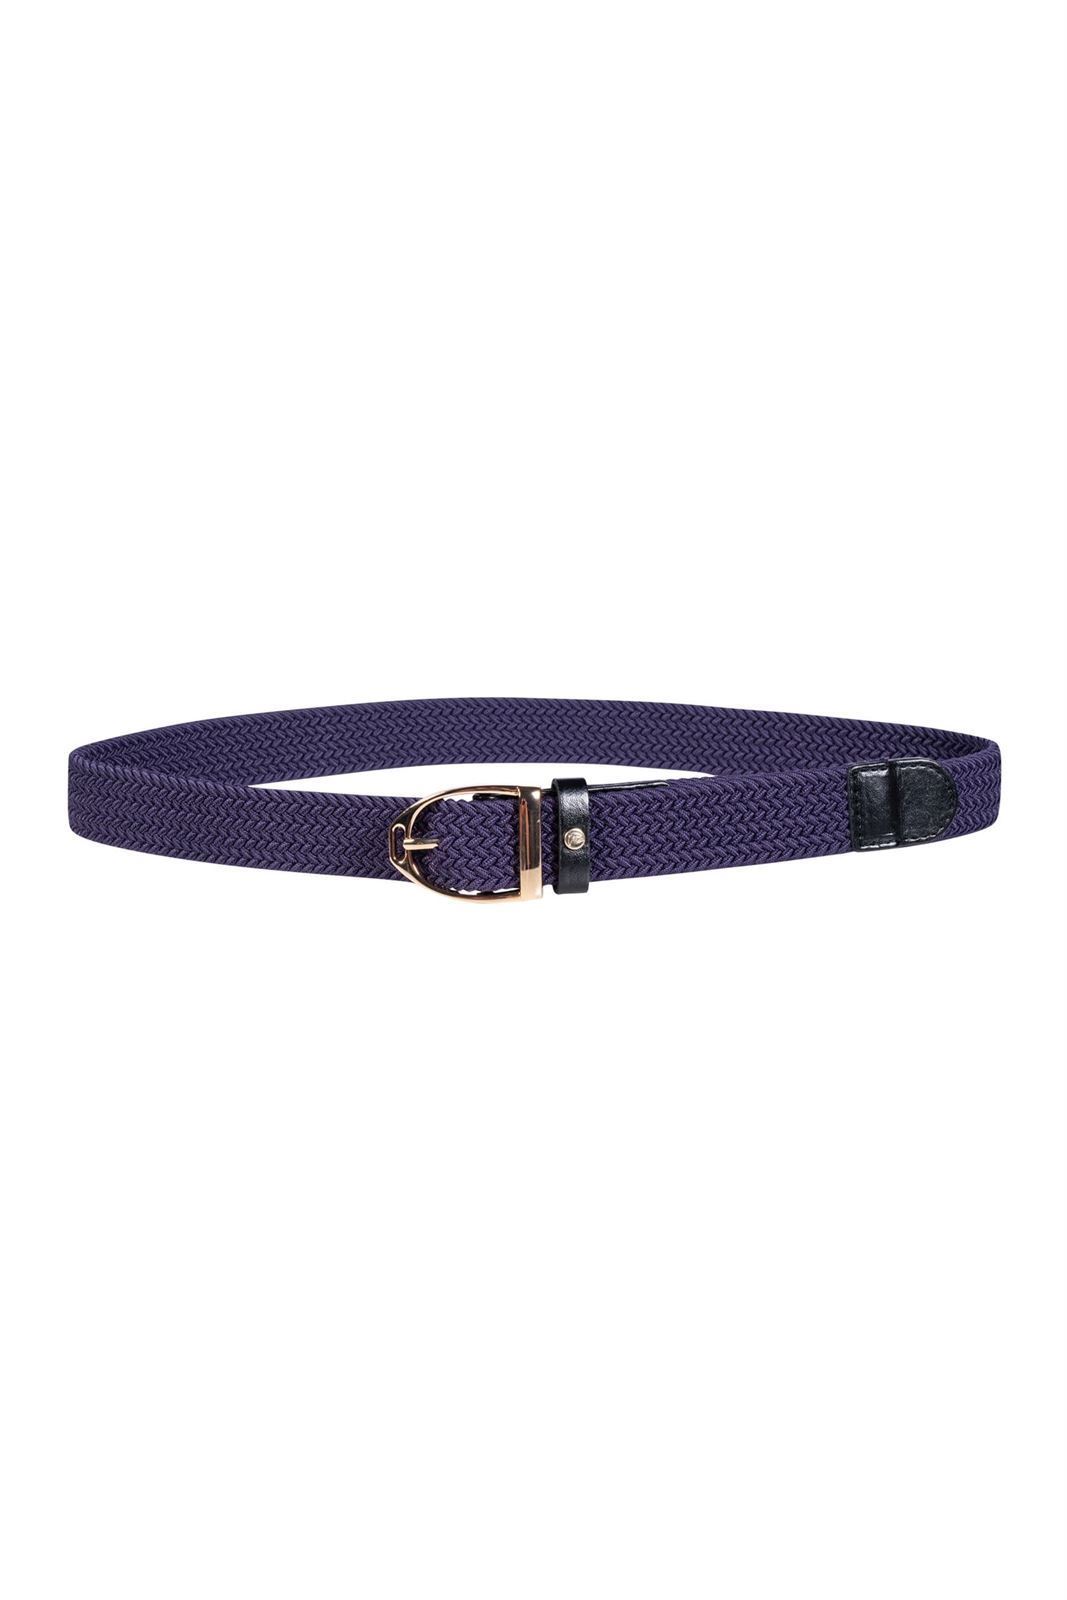 Cinturón elástico HKM Sports Equipment Lavender Bay color morado hebilla estribo - Imagen 1